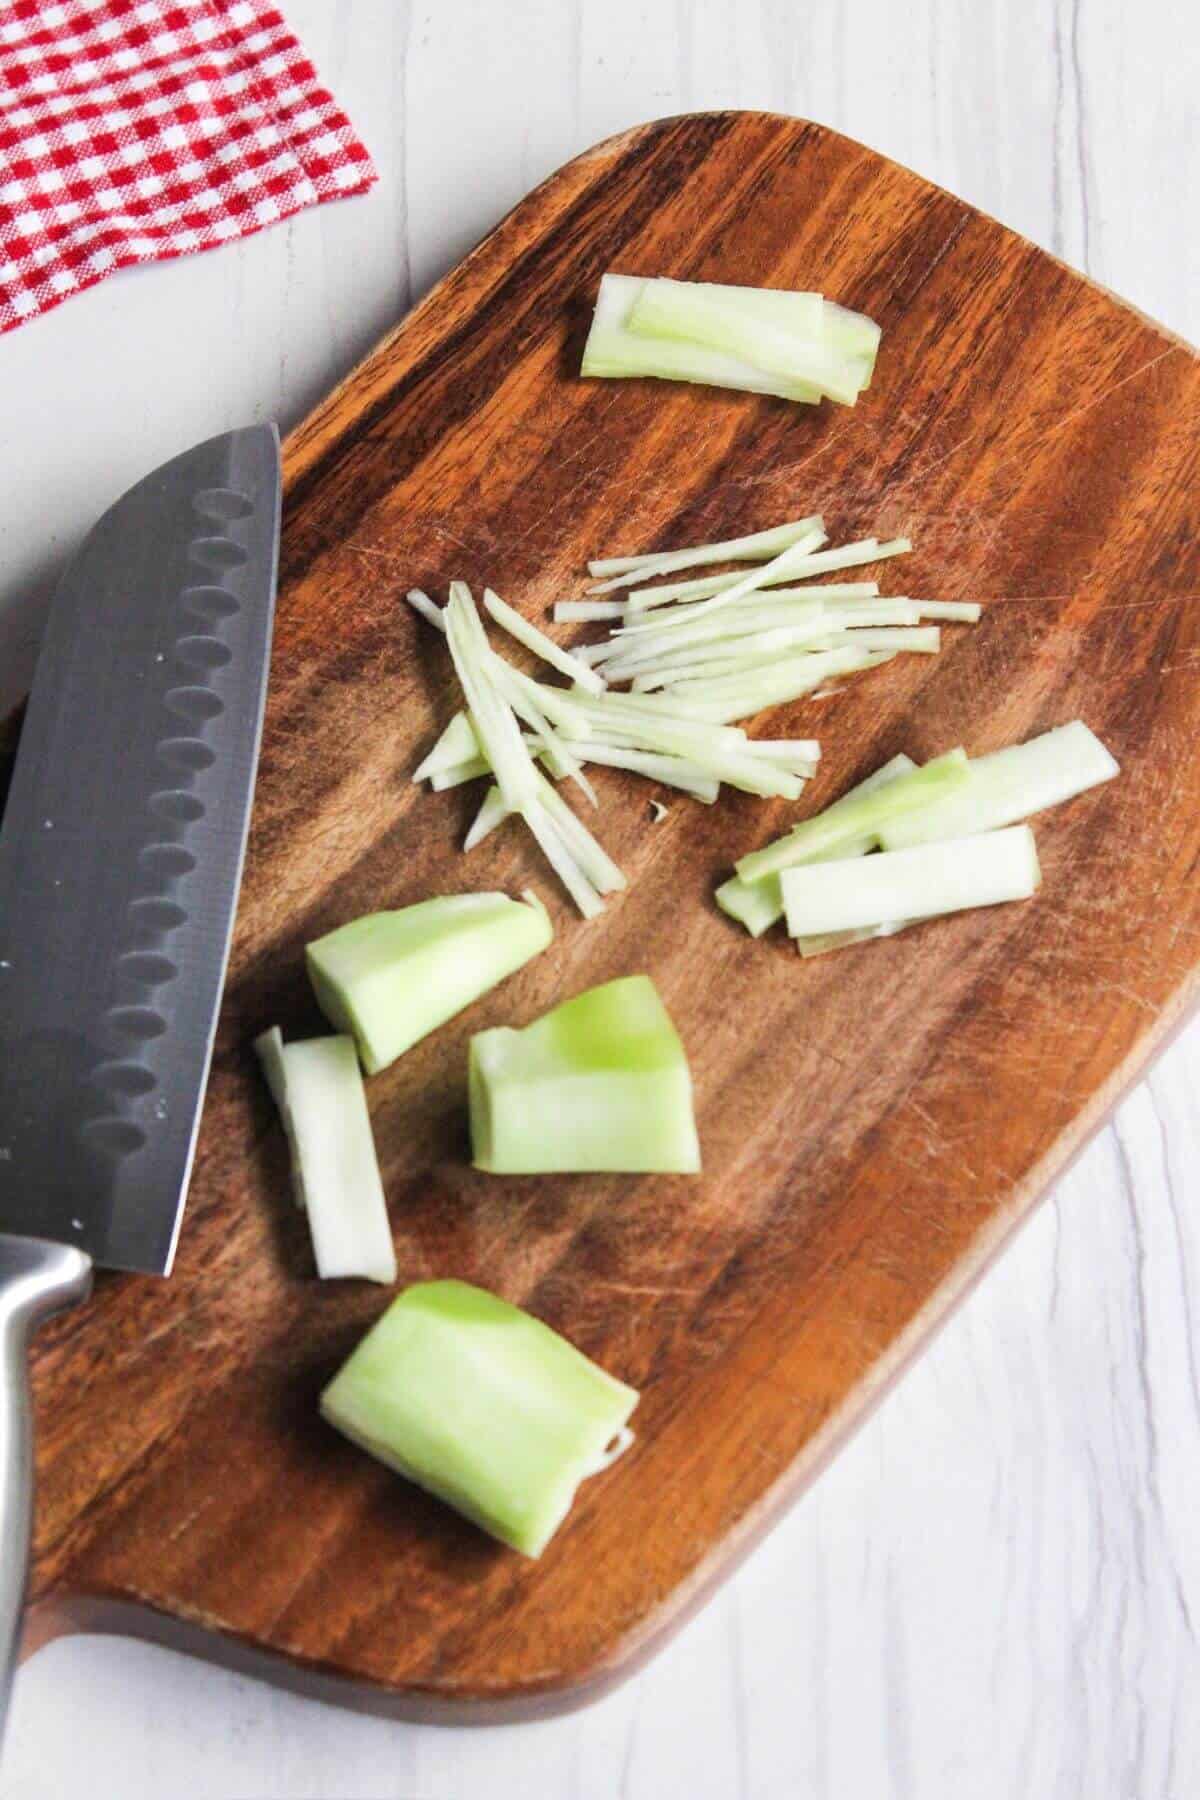 Sliced broccoli stems on a cutting board.